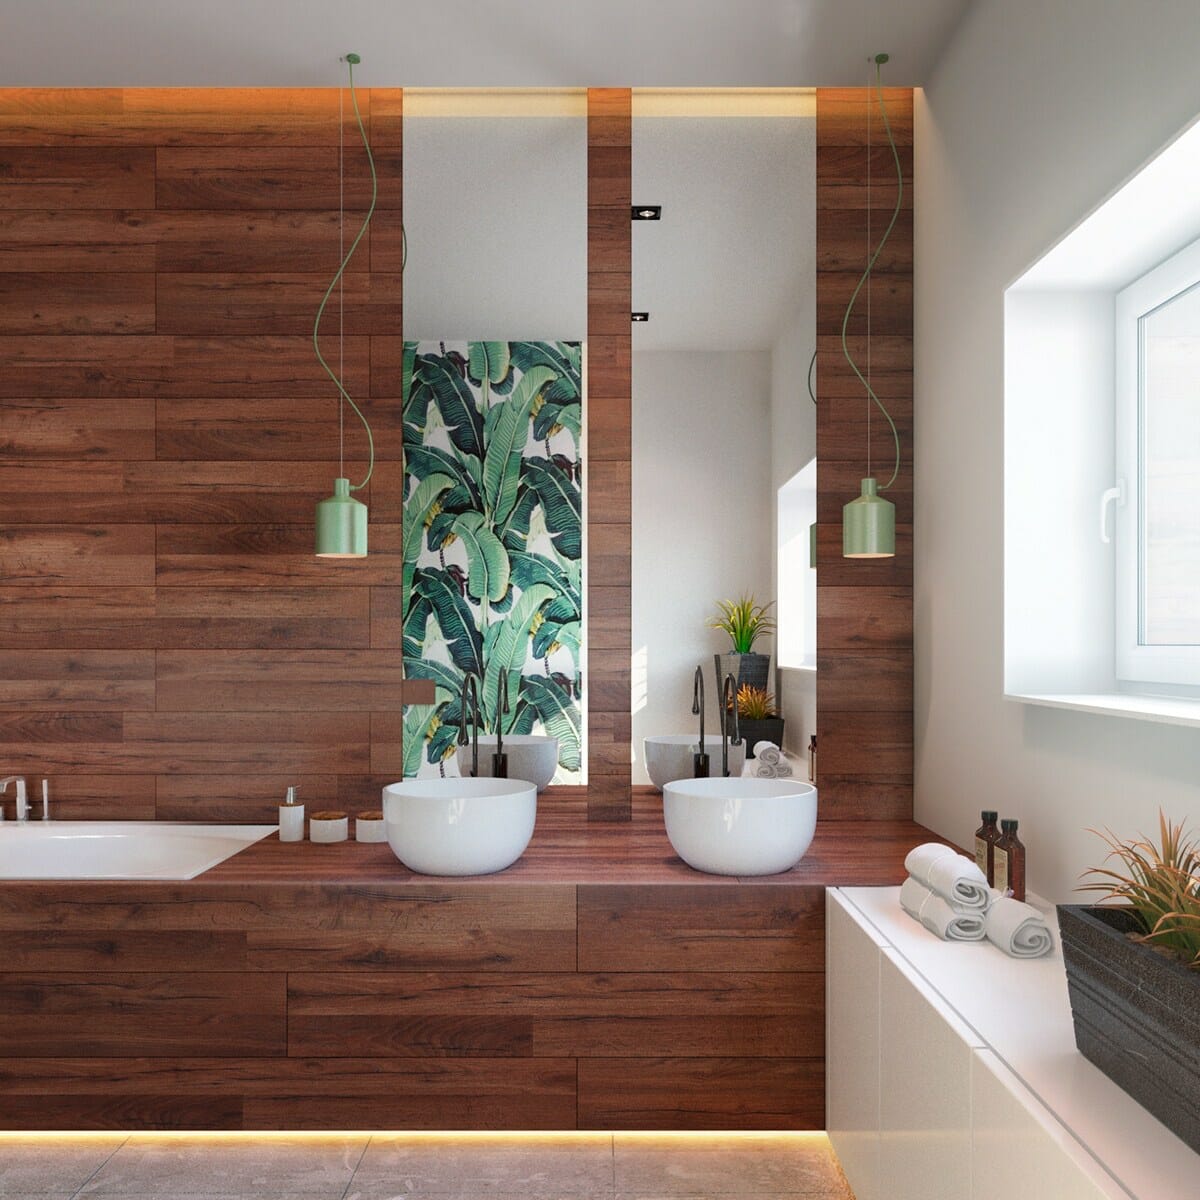 تصميم الحمام بألواح خشبية